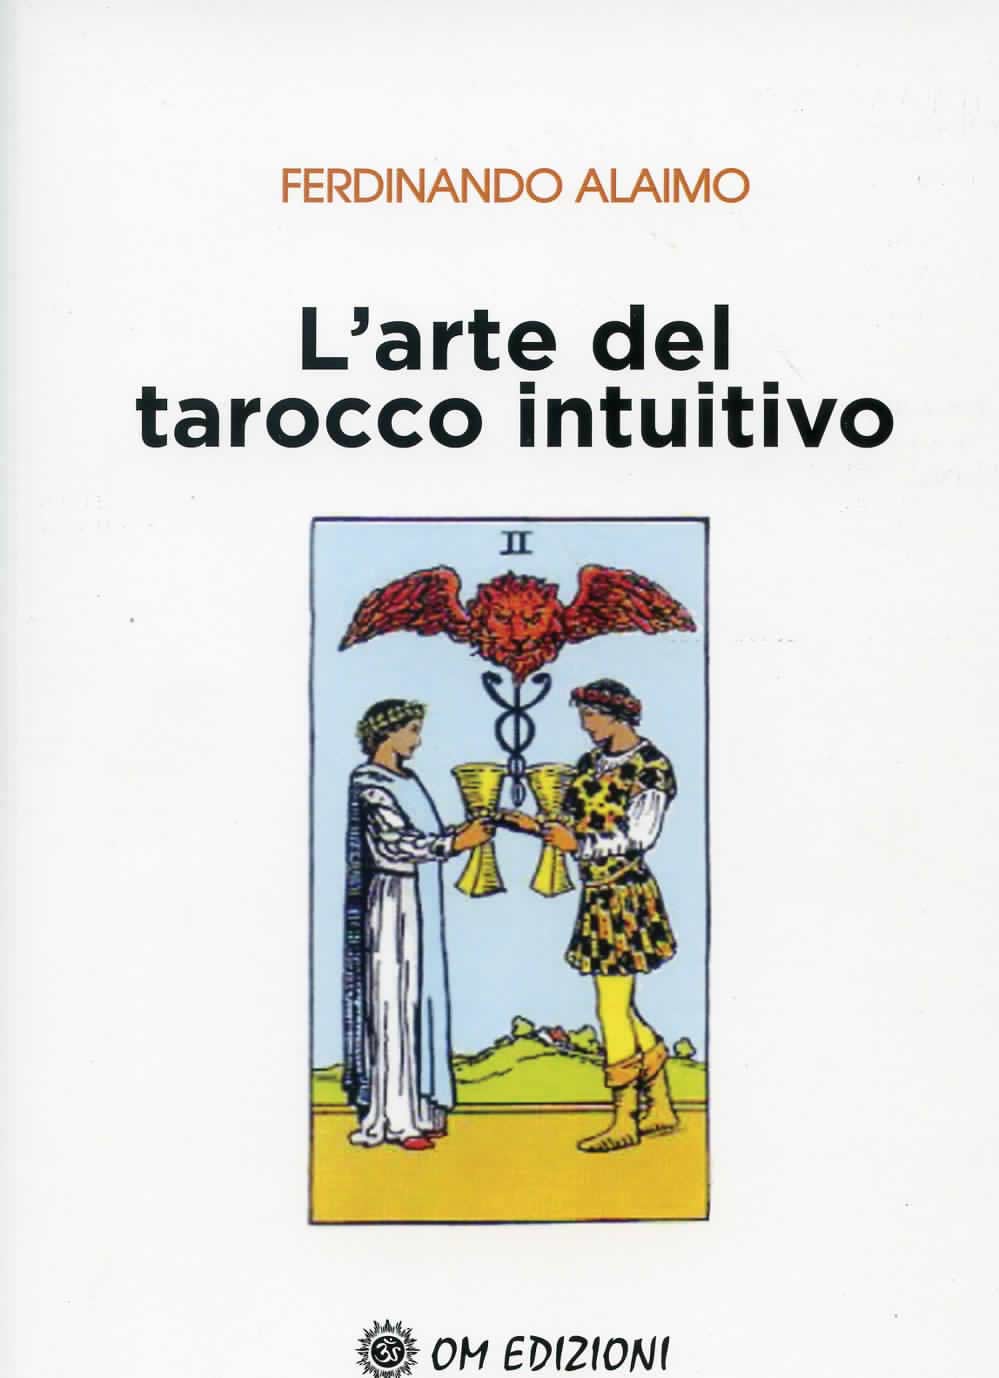 Libri Ferdinando Alaimo - L' Arte Del Tarocco Intuitivo NUOVO SIGILLATO, EDIZIONE DEL 21/05/2020 SUBITO DISPONIBILE